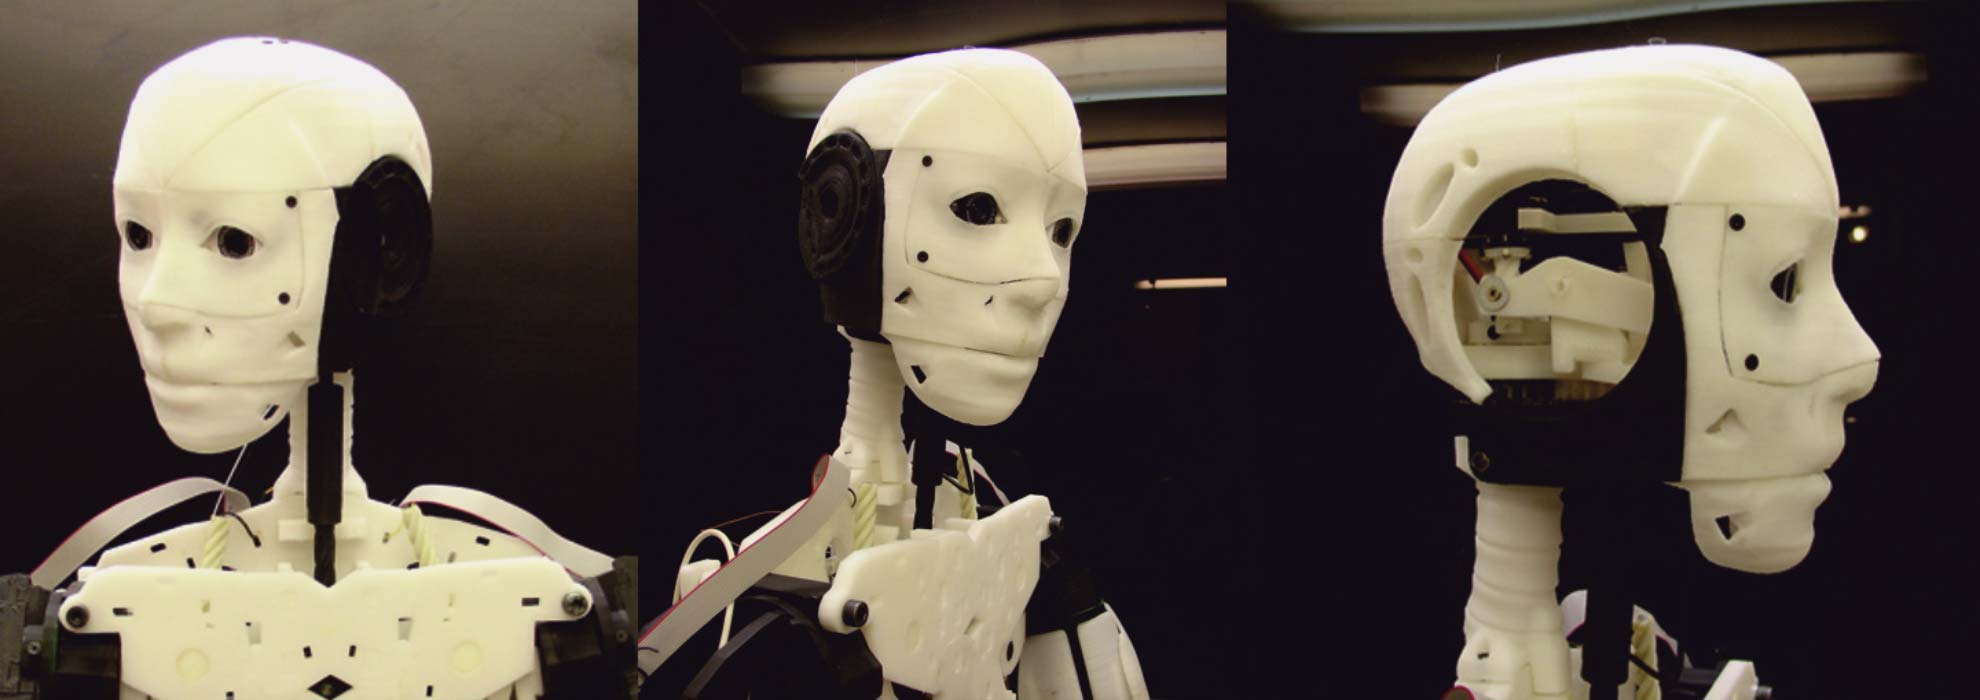 Робот в виде человека